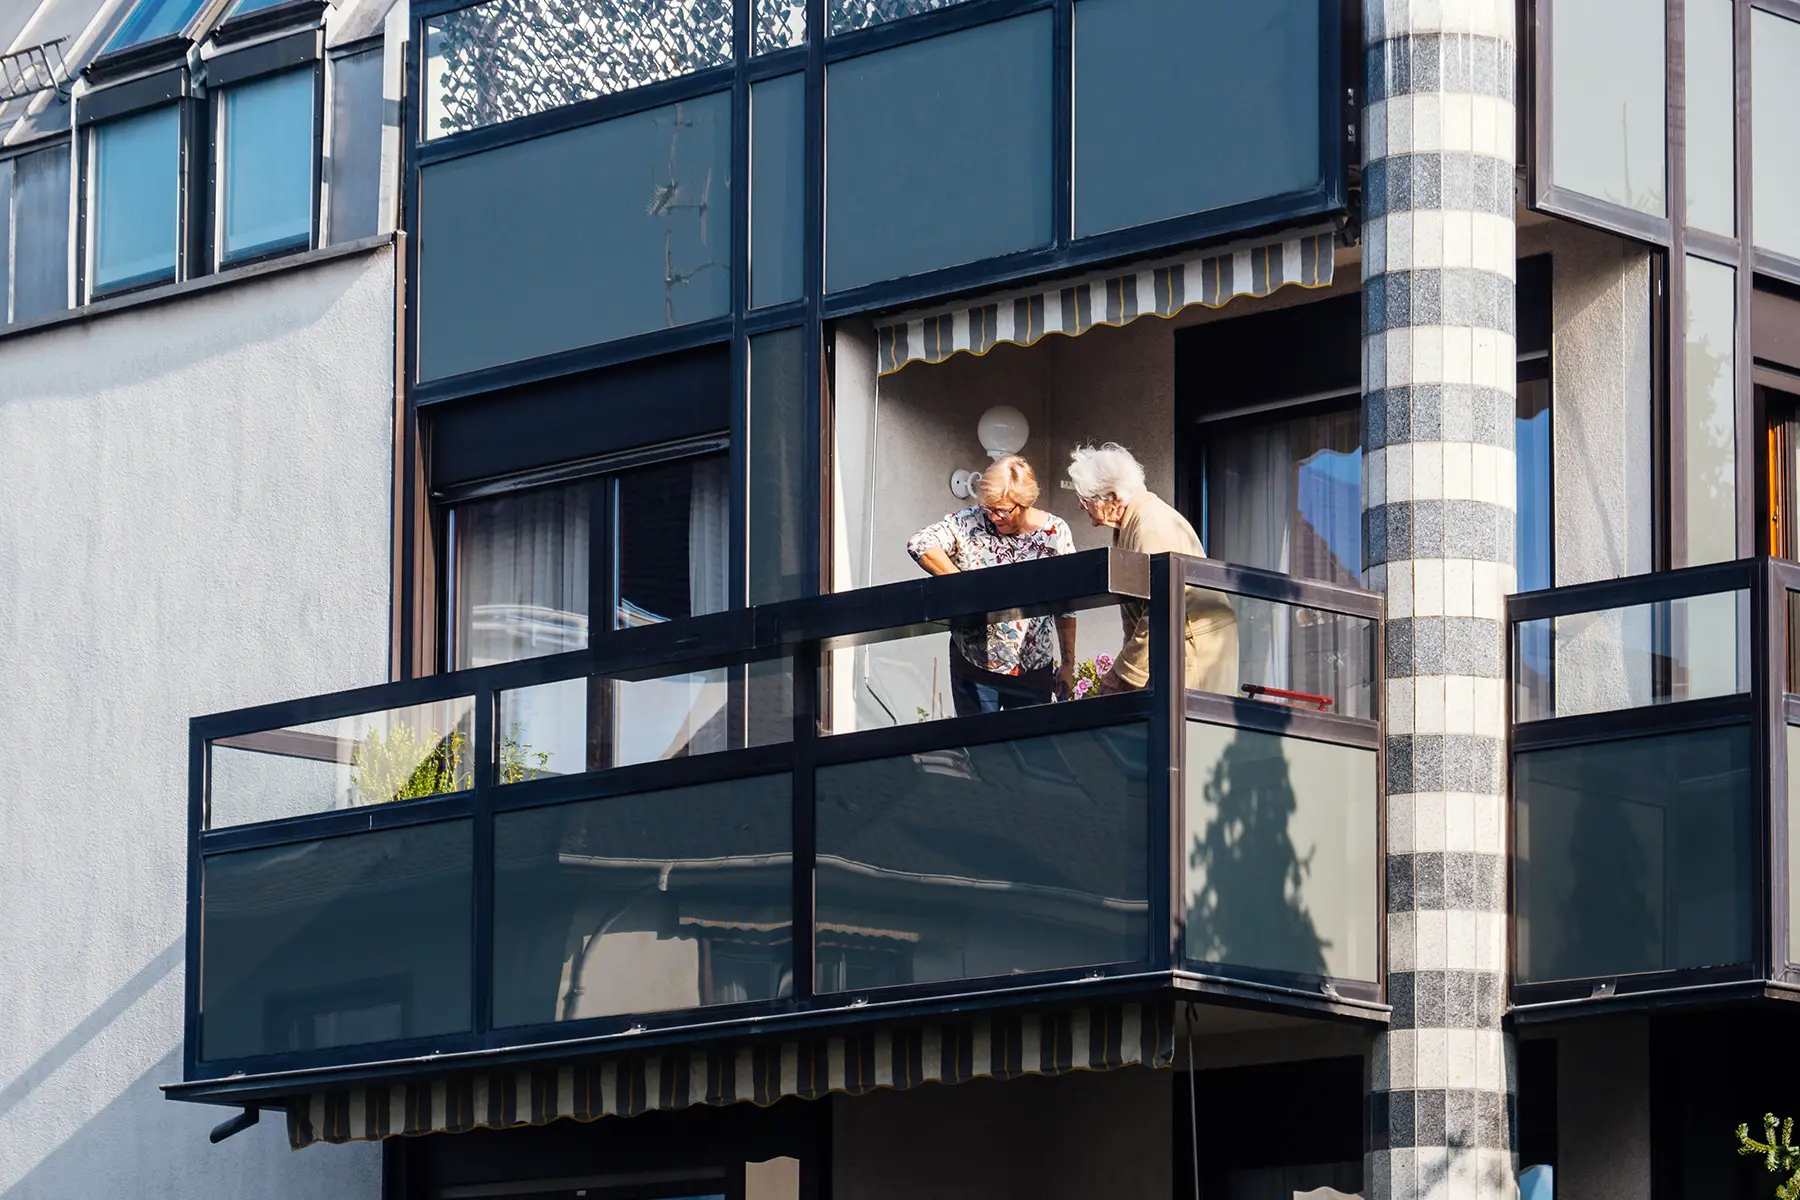 Two elderly women on a balcony in Paris